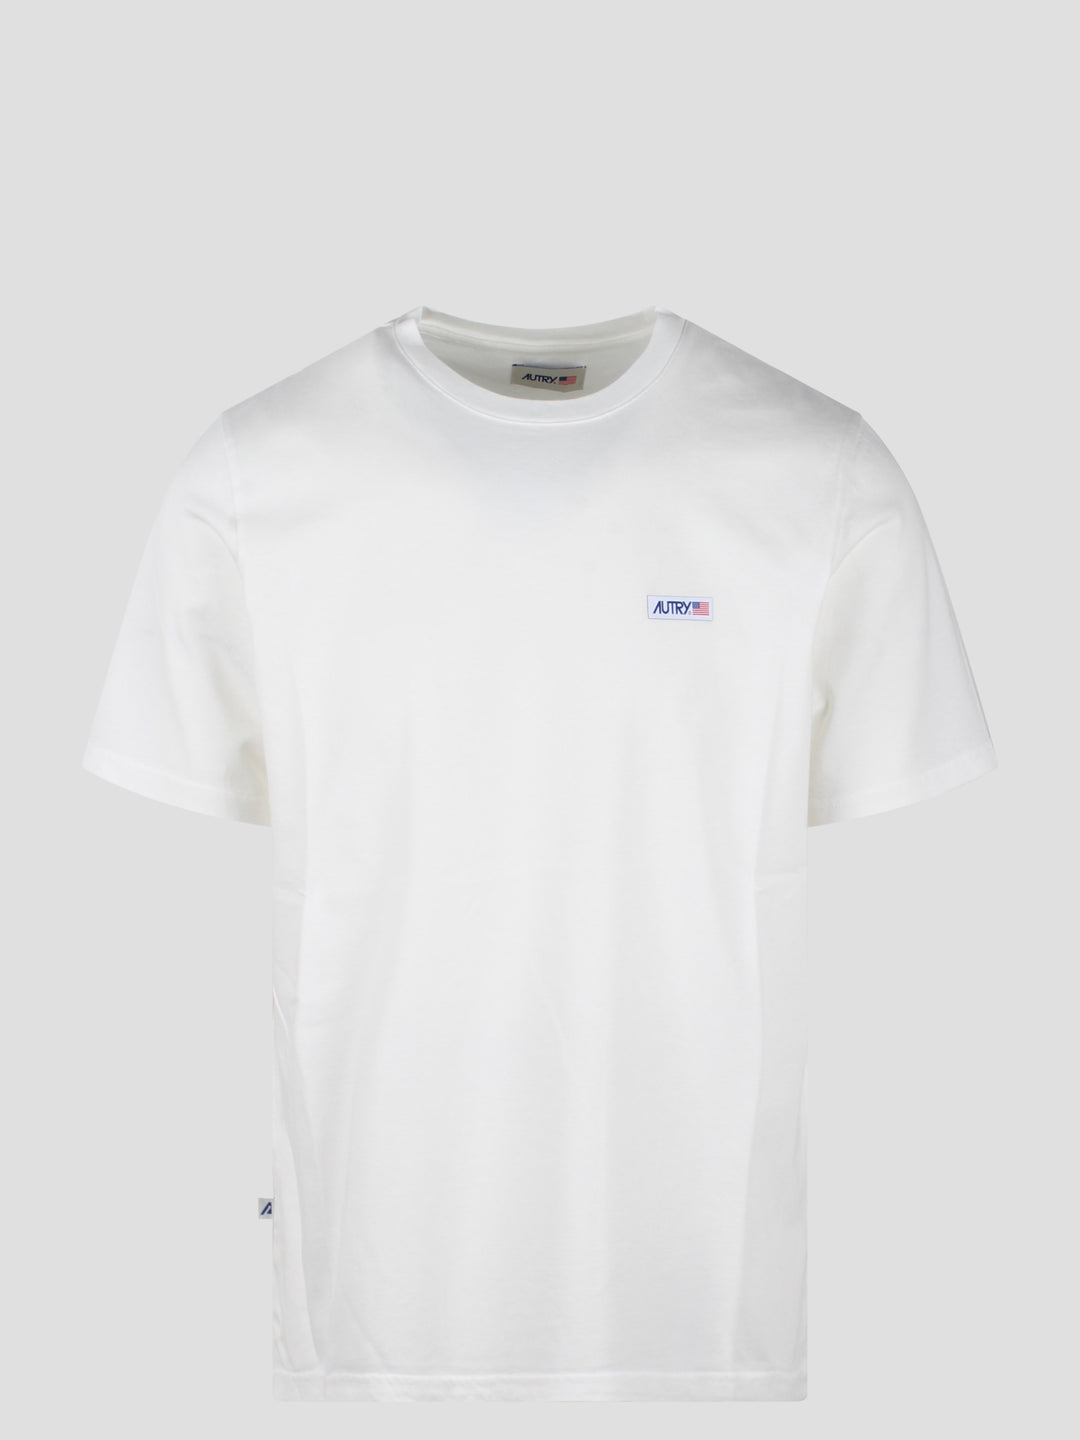 Cotton crew neck t-shirt